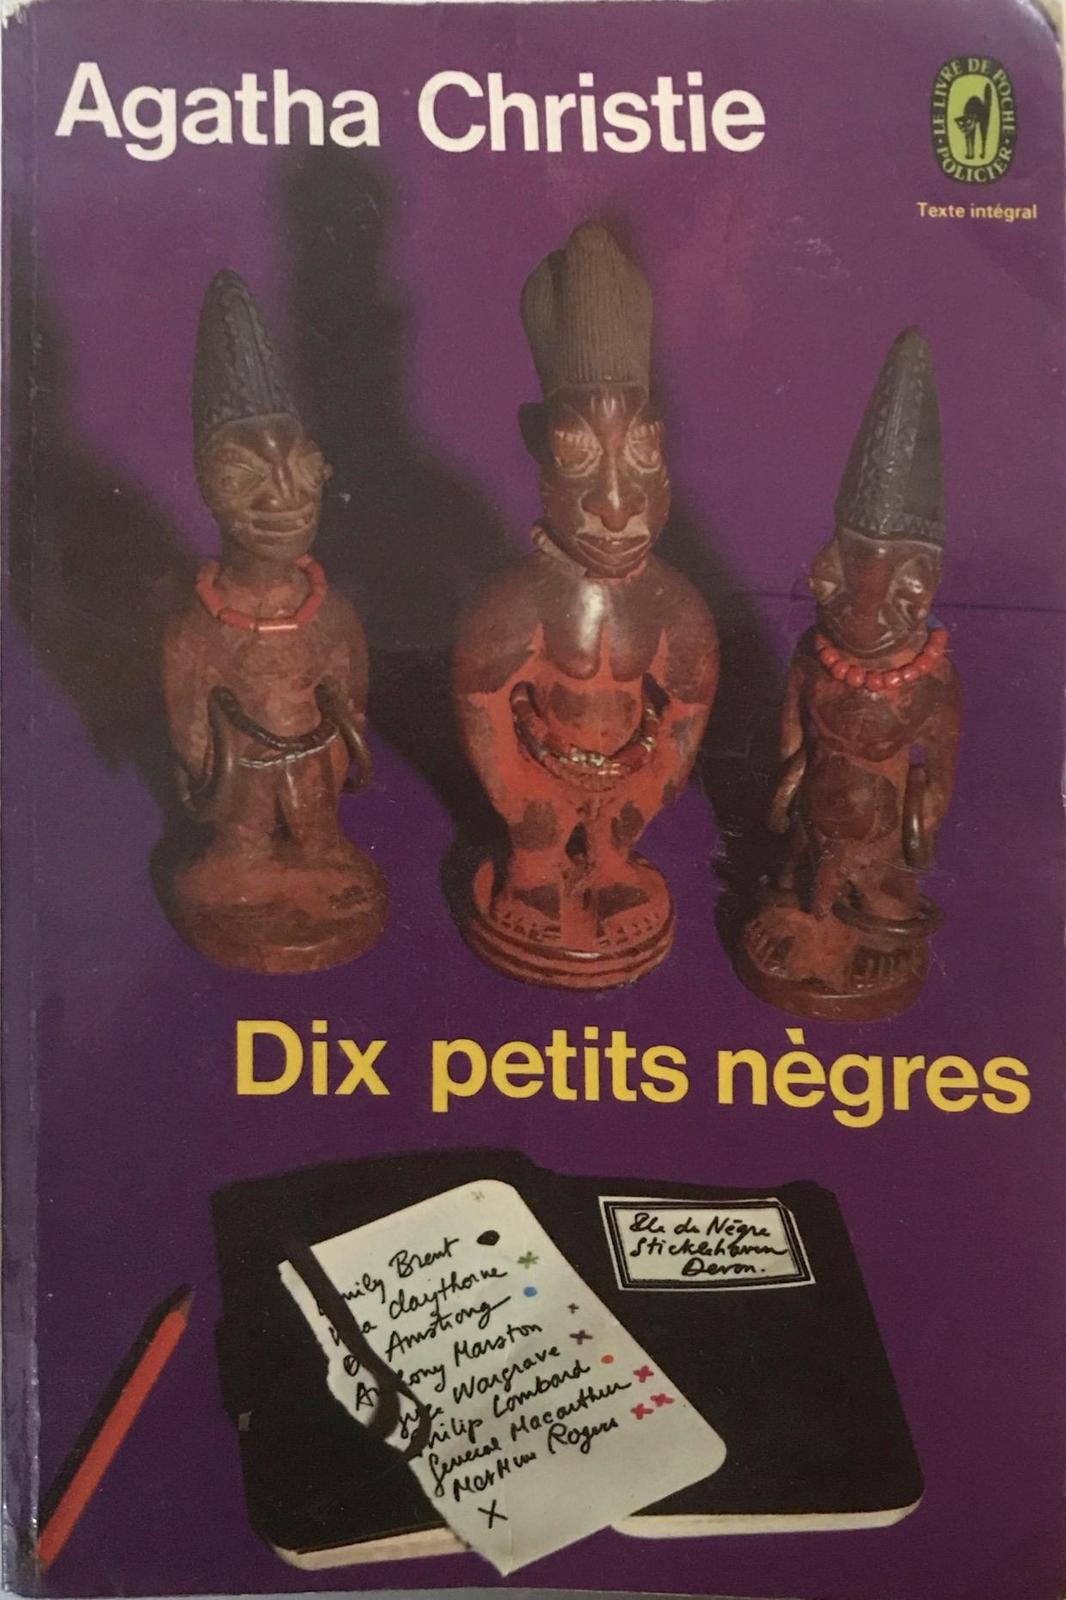 Agatha Christie: Dix petits nègres (French language, 1947, Librairie des Champs Elysées)